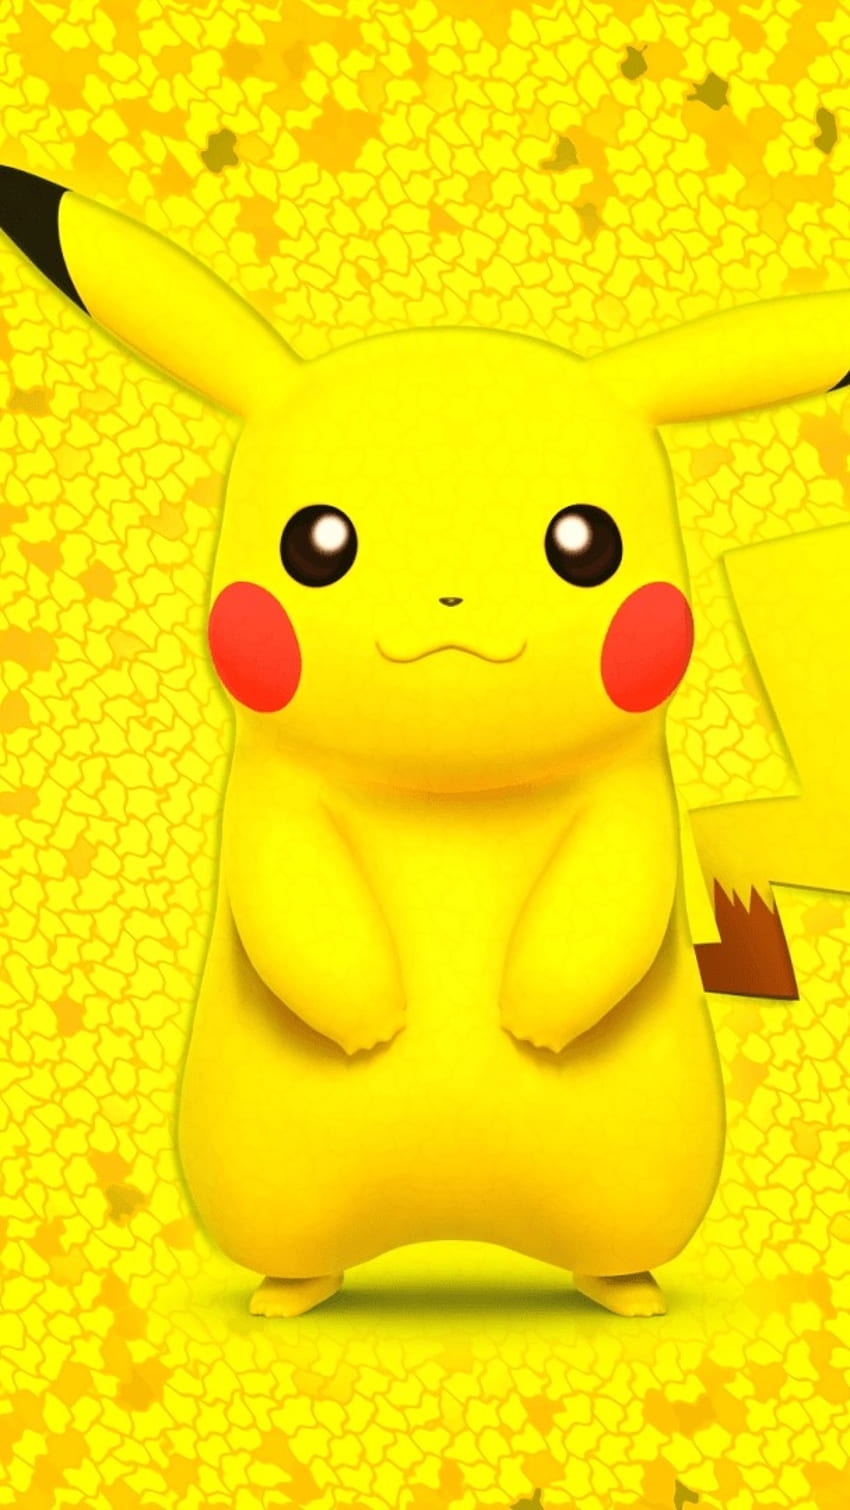 Hình nền Detective Pikachu: Những chi tiết tinh tế và hấp dẫn trong hình nền Detective Pikachu sẽ khiến bạn thật sự muốn chiêm ngưỡng. Bạn sẽ được đi sâu vào thế giới ảo đầy lôi cuốn và hài hước của thám tử Pikachu và các bạn đồng hành.